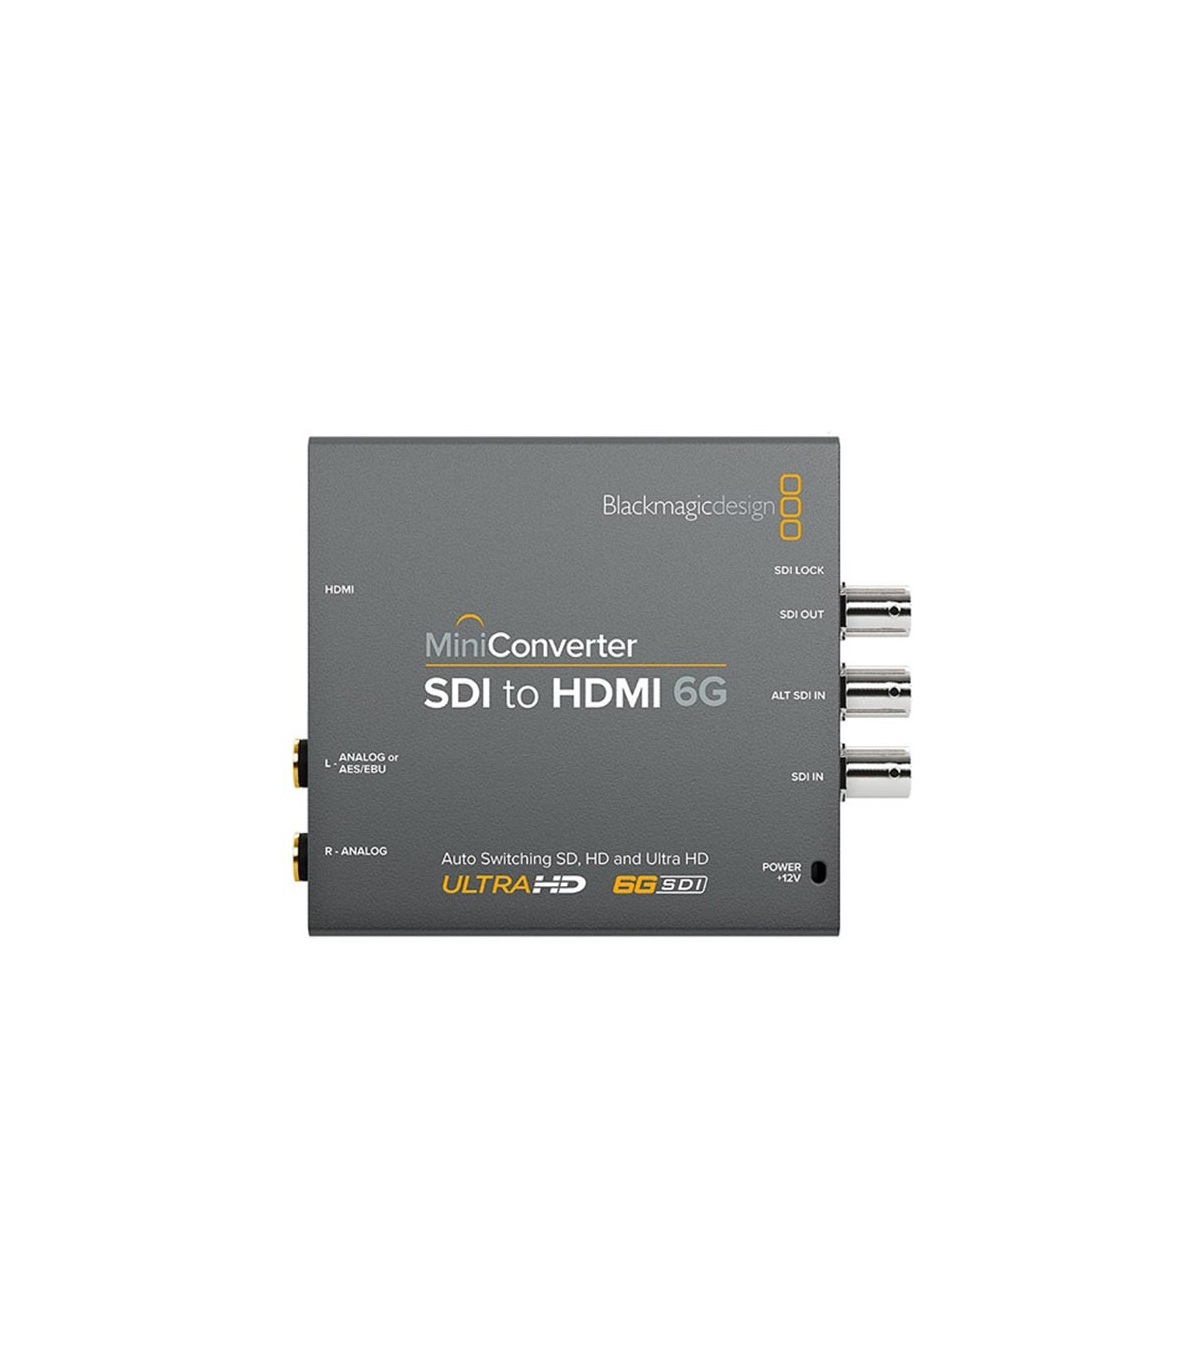 مینی کانورتر بلک مجیک Blackmagic Design Mini Converter SDI to HDMI 6G